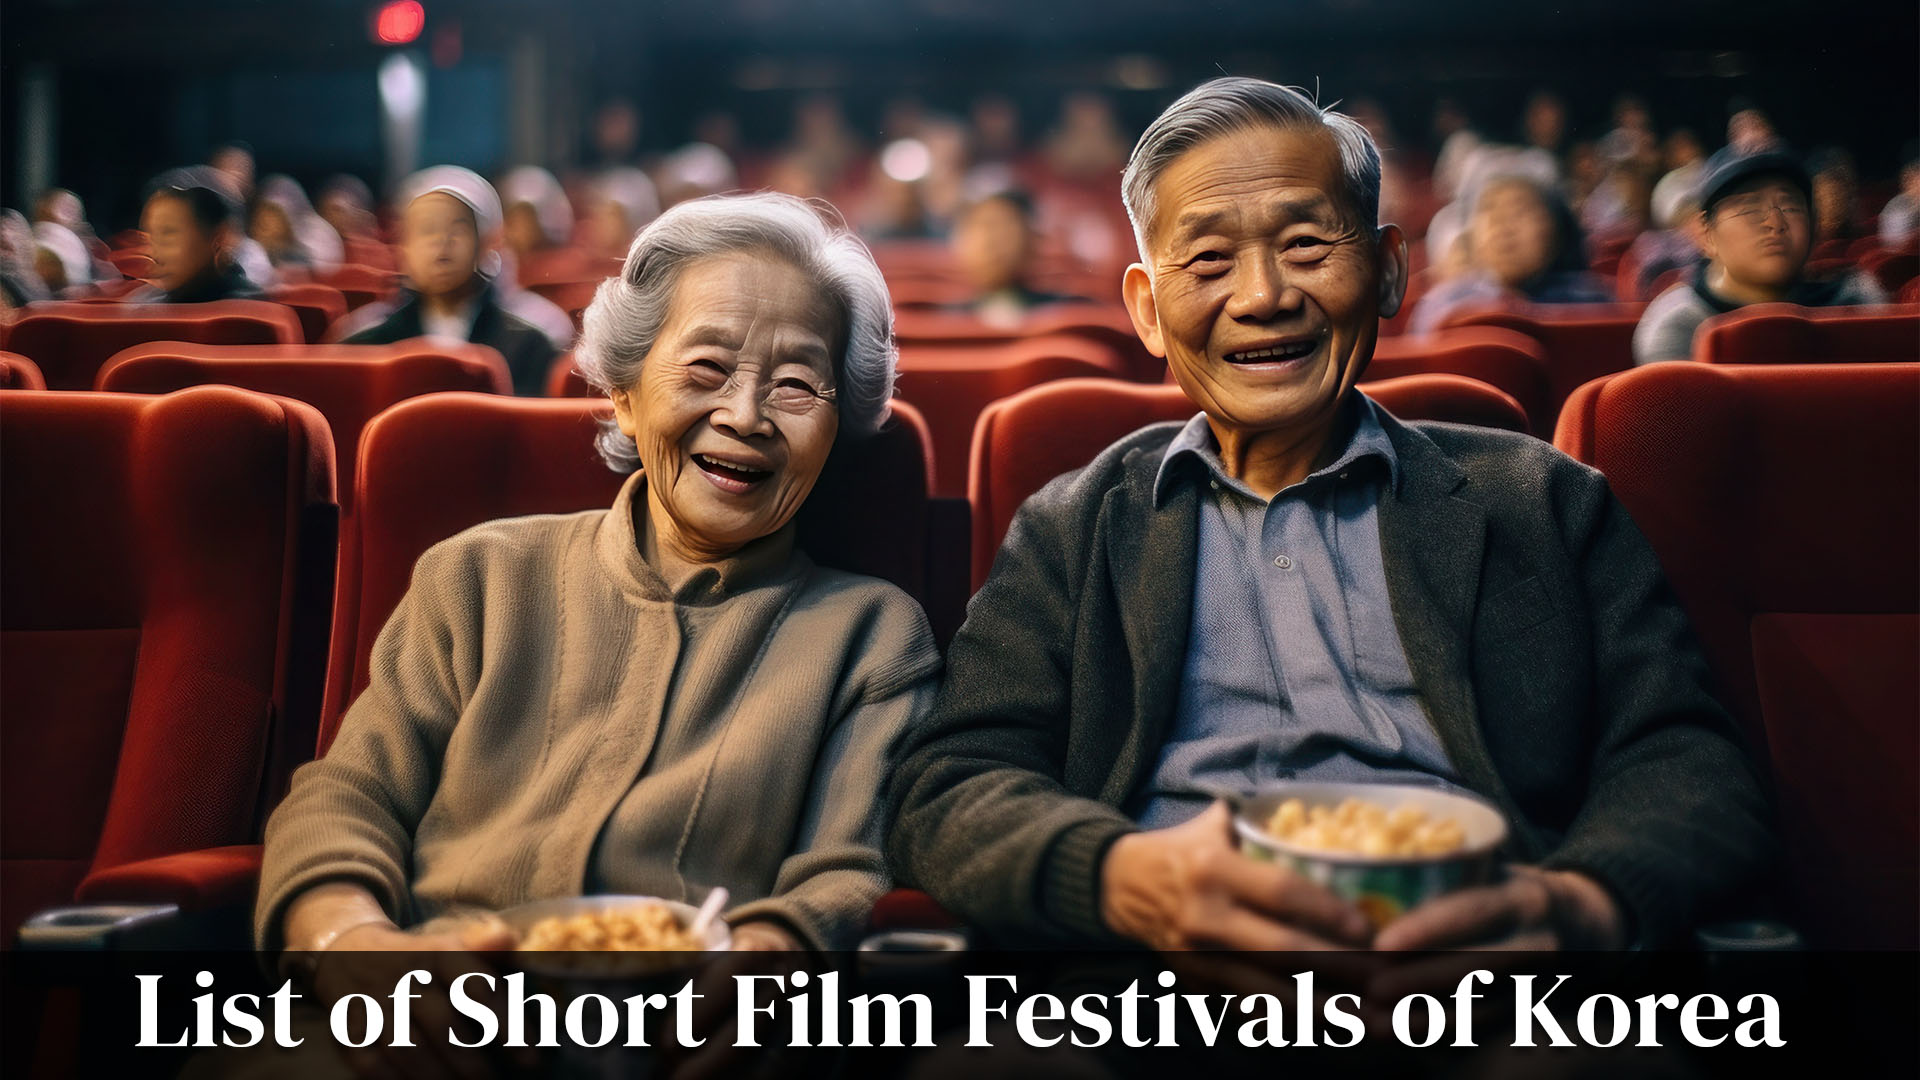 List of Short Film Festivals of Korea